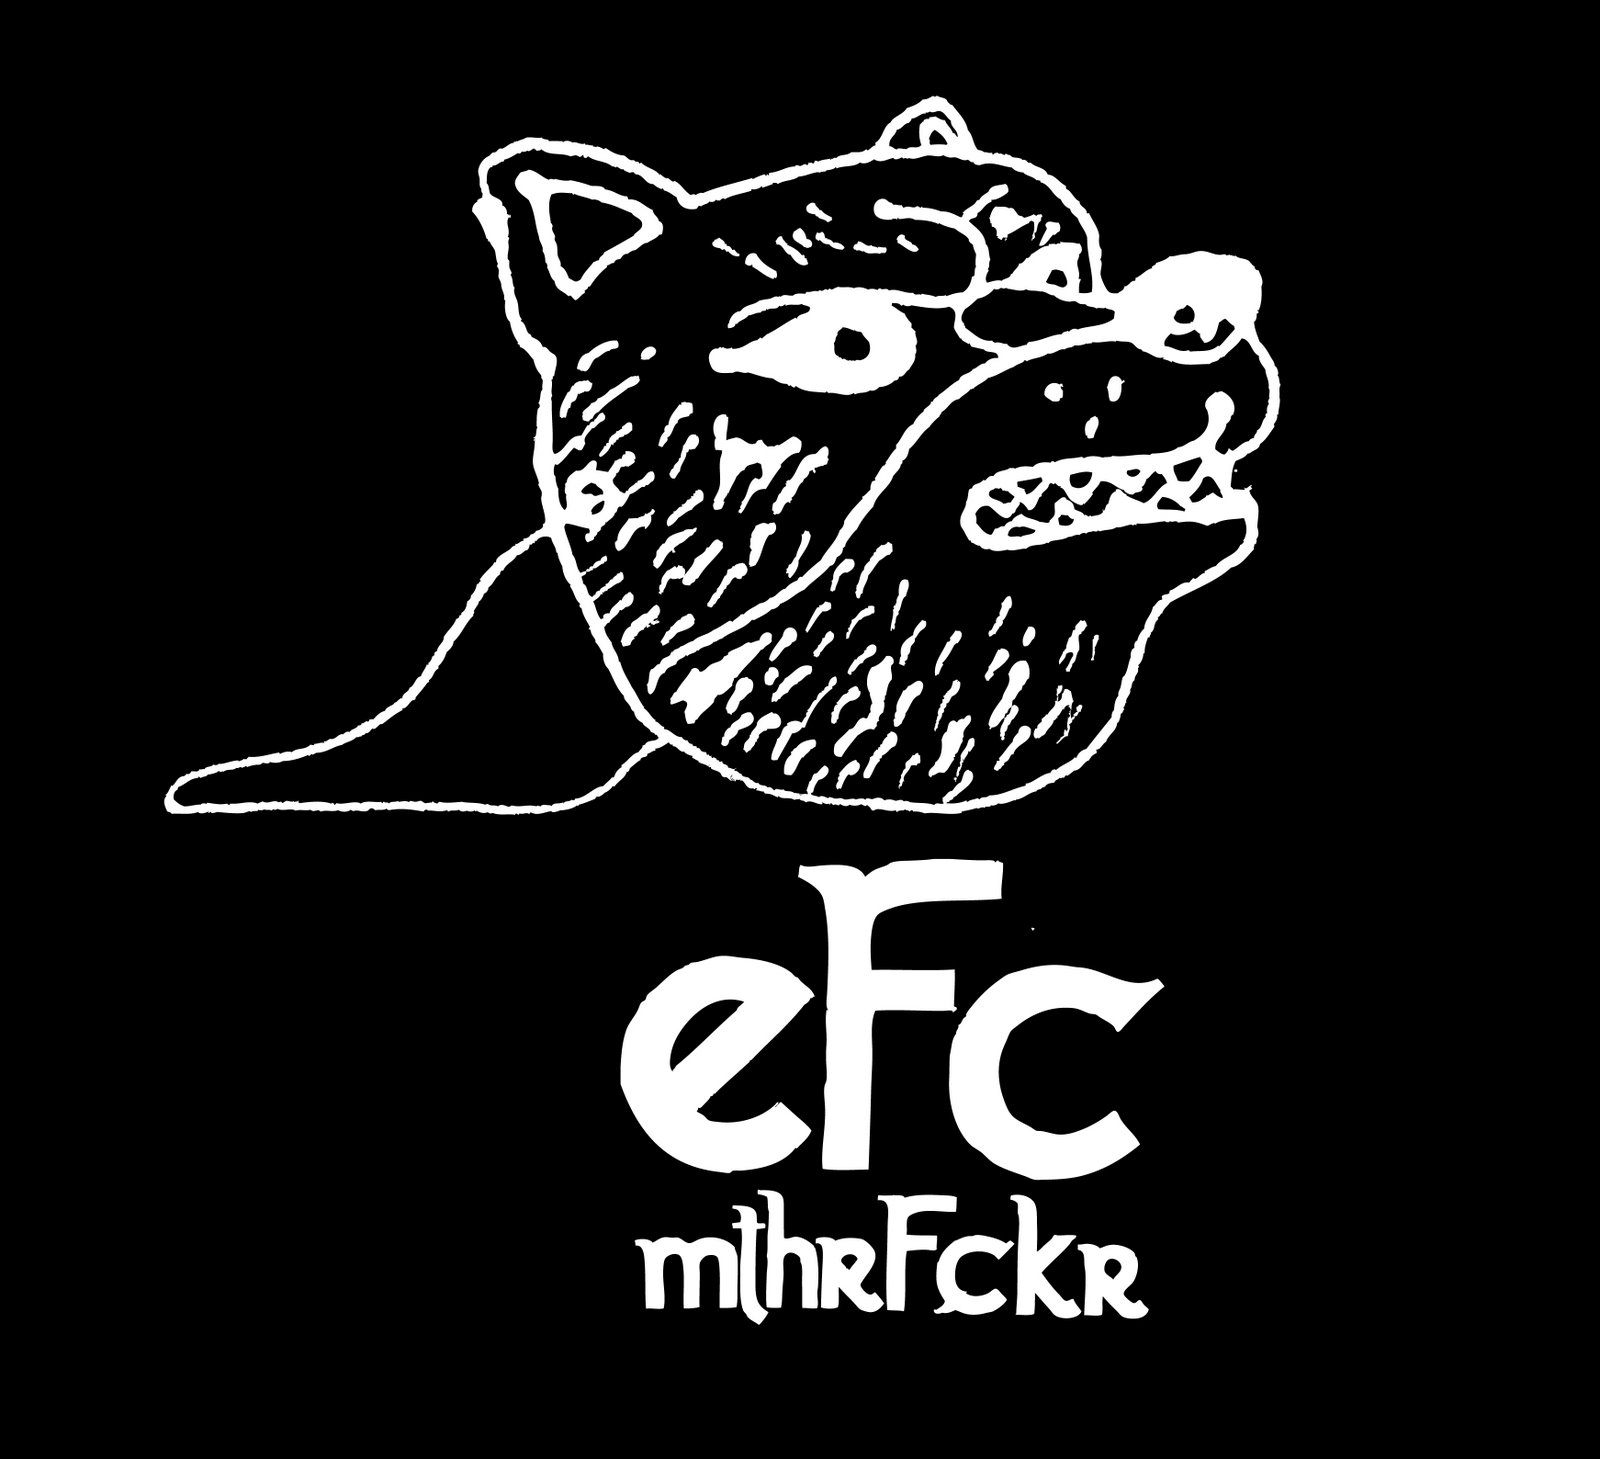 EFC Mthrfckr